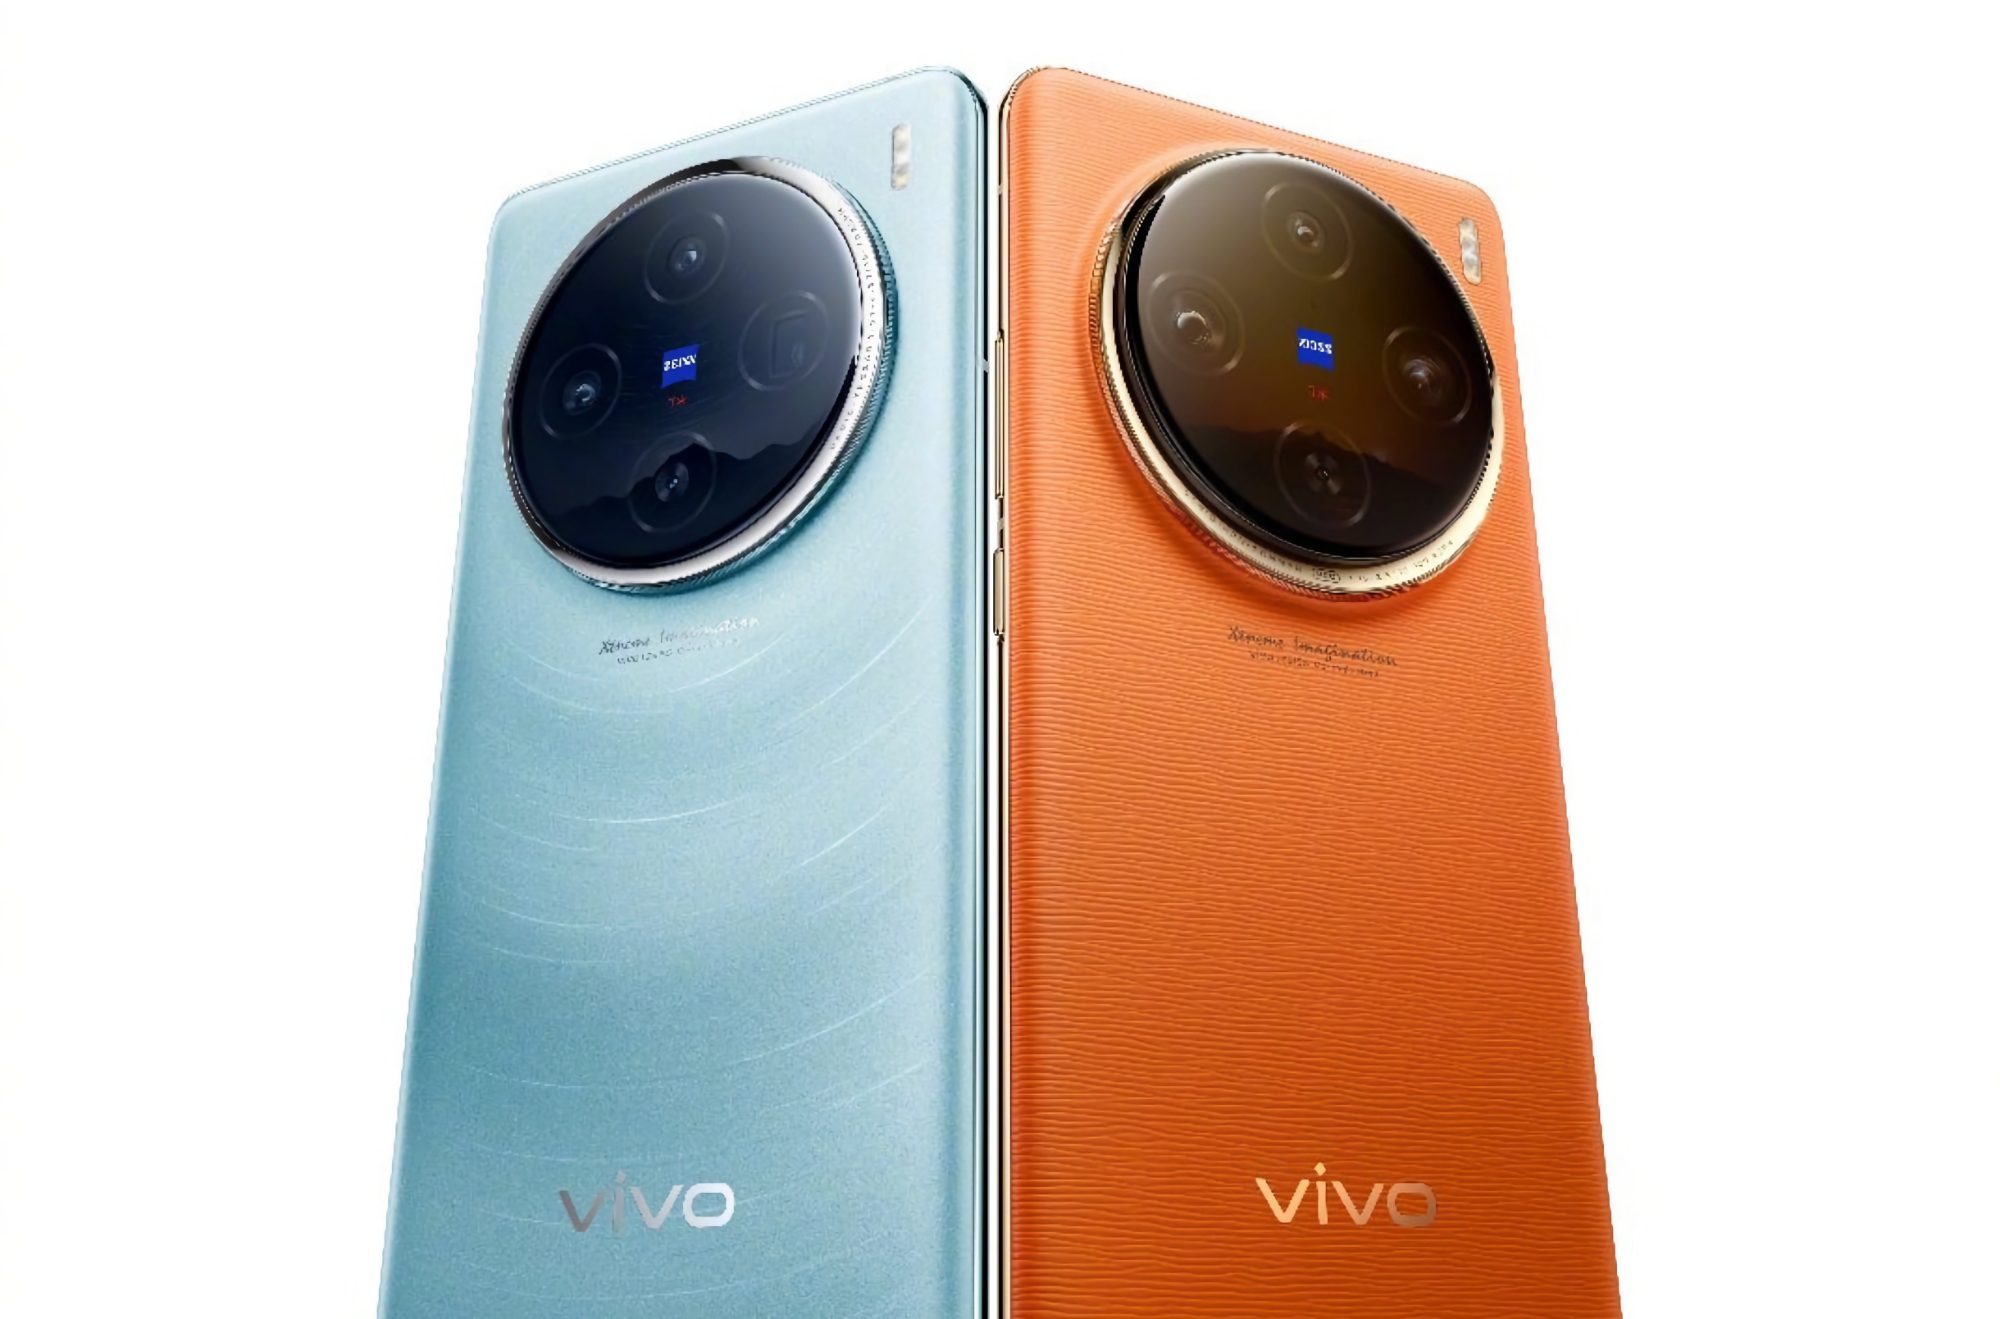 vivo ha mostrato nuovi rendering dell'ammiraglia vivo X100 Pro: lo smartphone sarà dotato di una fotocamera ZEISS e sarà disponibile in quattro colori